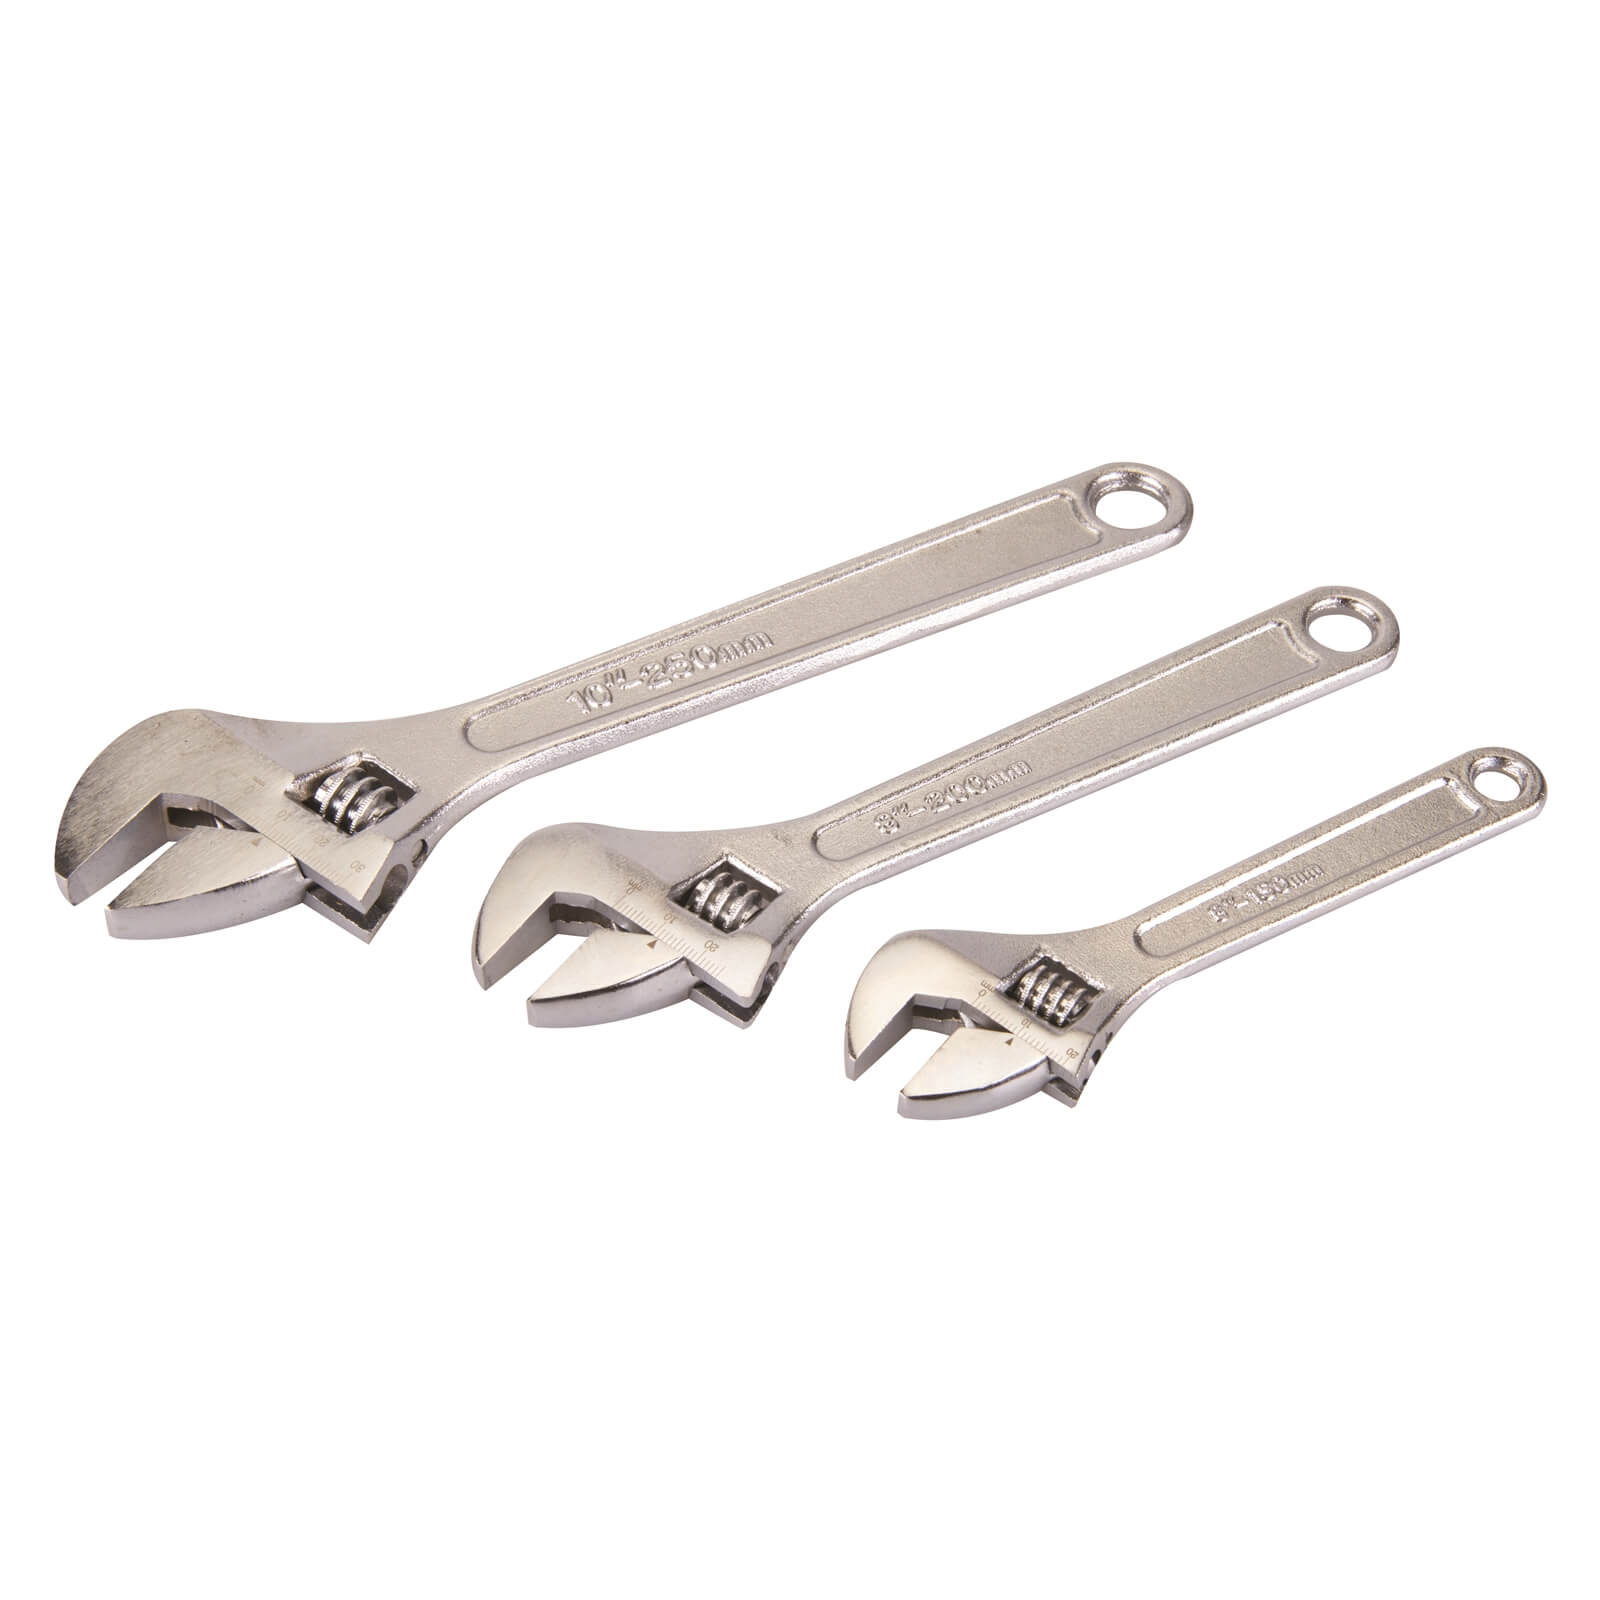 Silverline Adjustable Wrench Set - 150 200 250mm